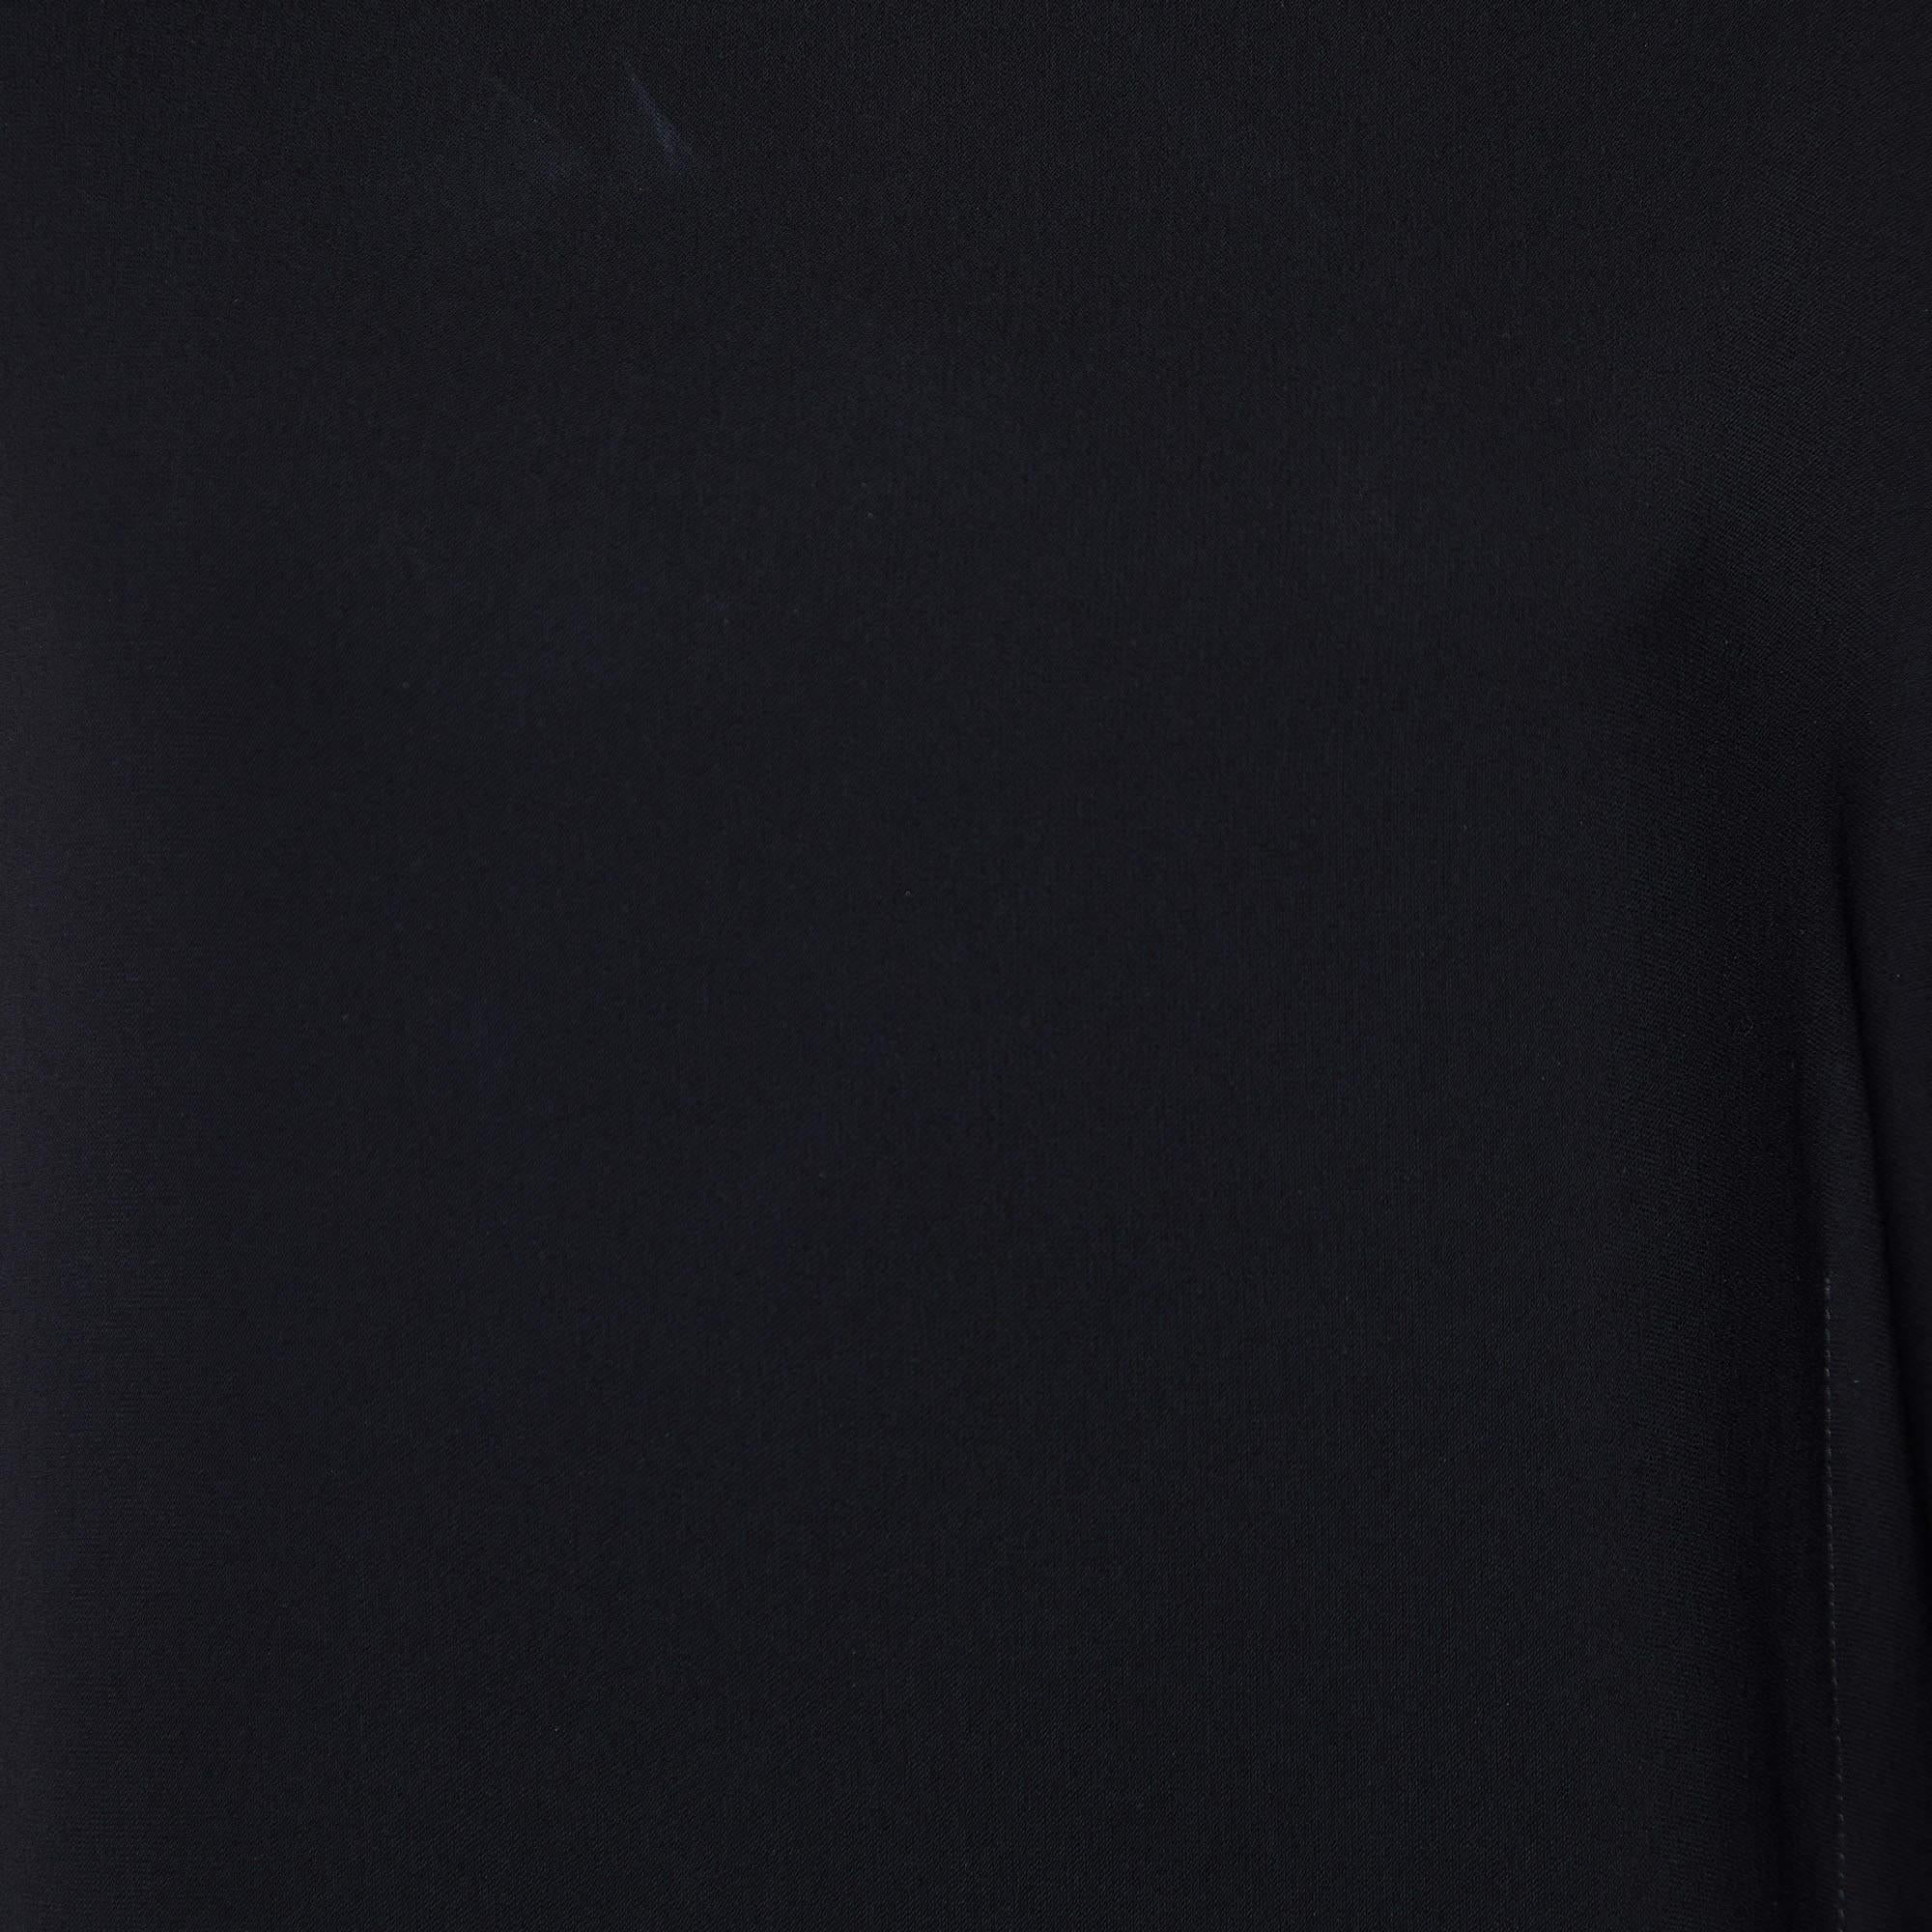 Max Mara Studio Black Crepe Contrast Pleated Asymmetric Dress M In Excellent Condition For Sale In Dubai, Al Qouz 2